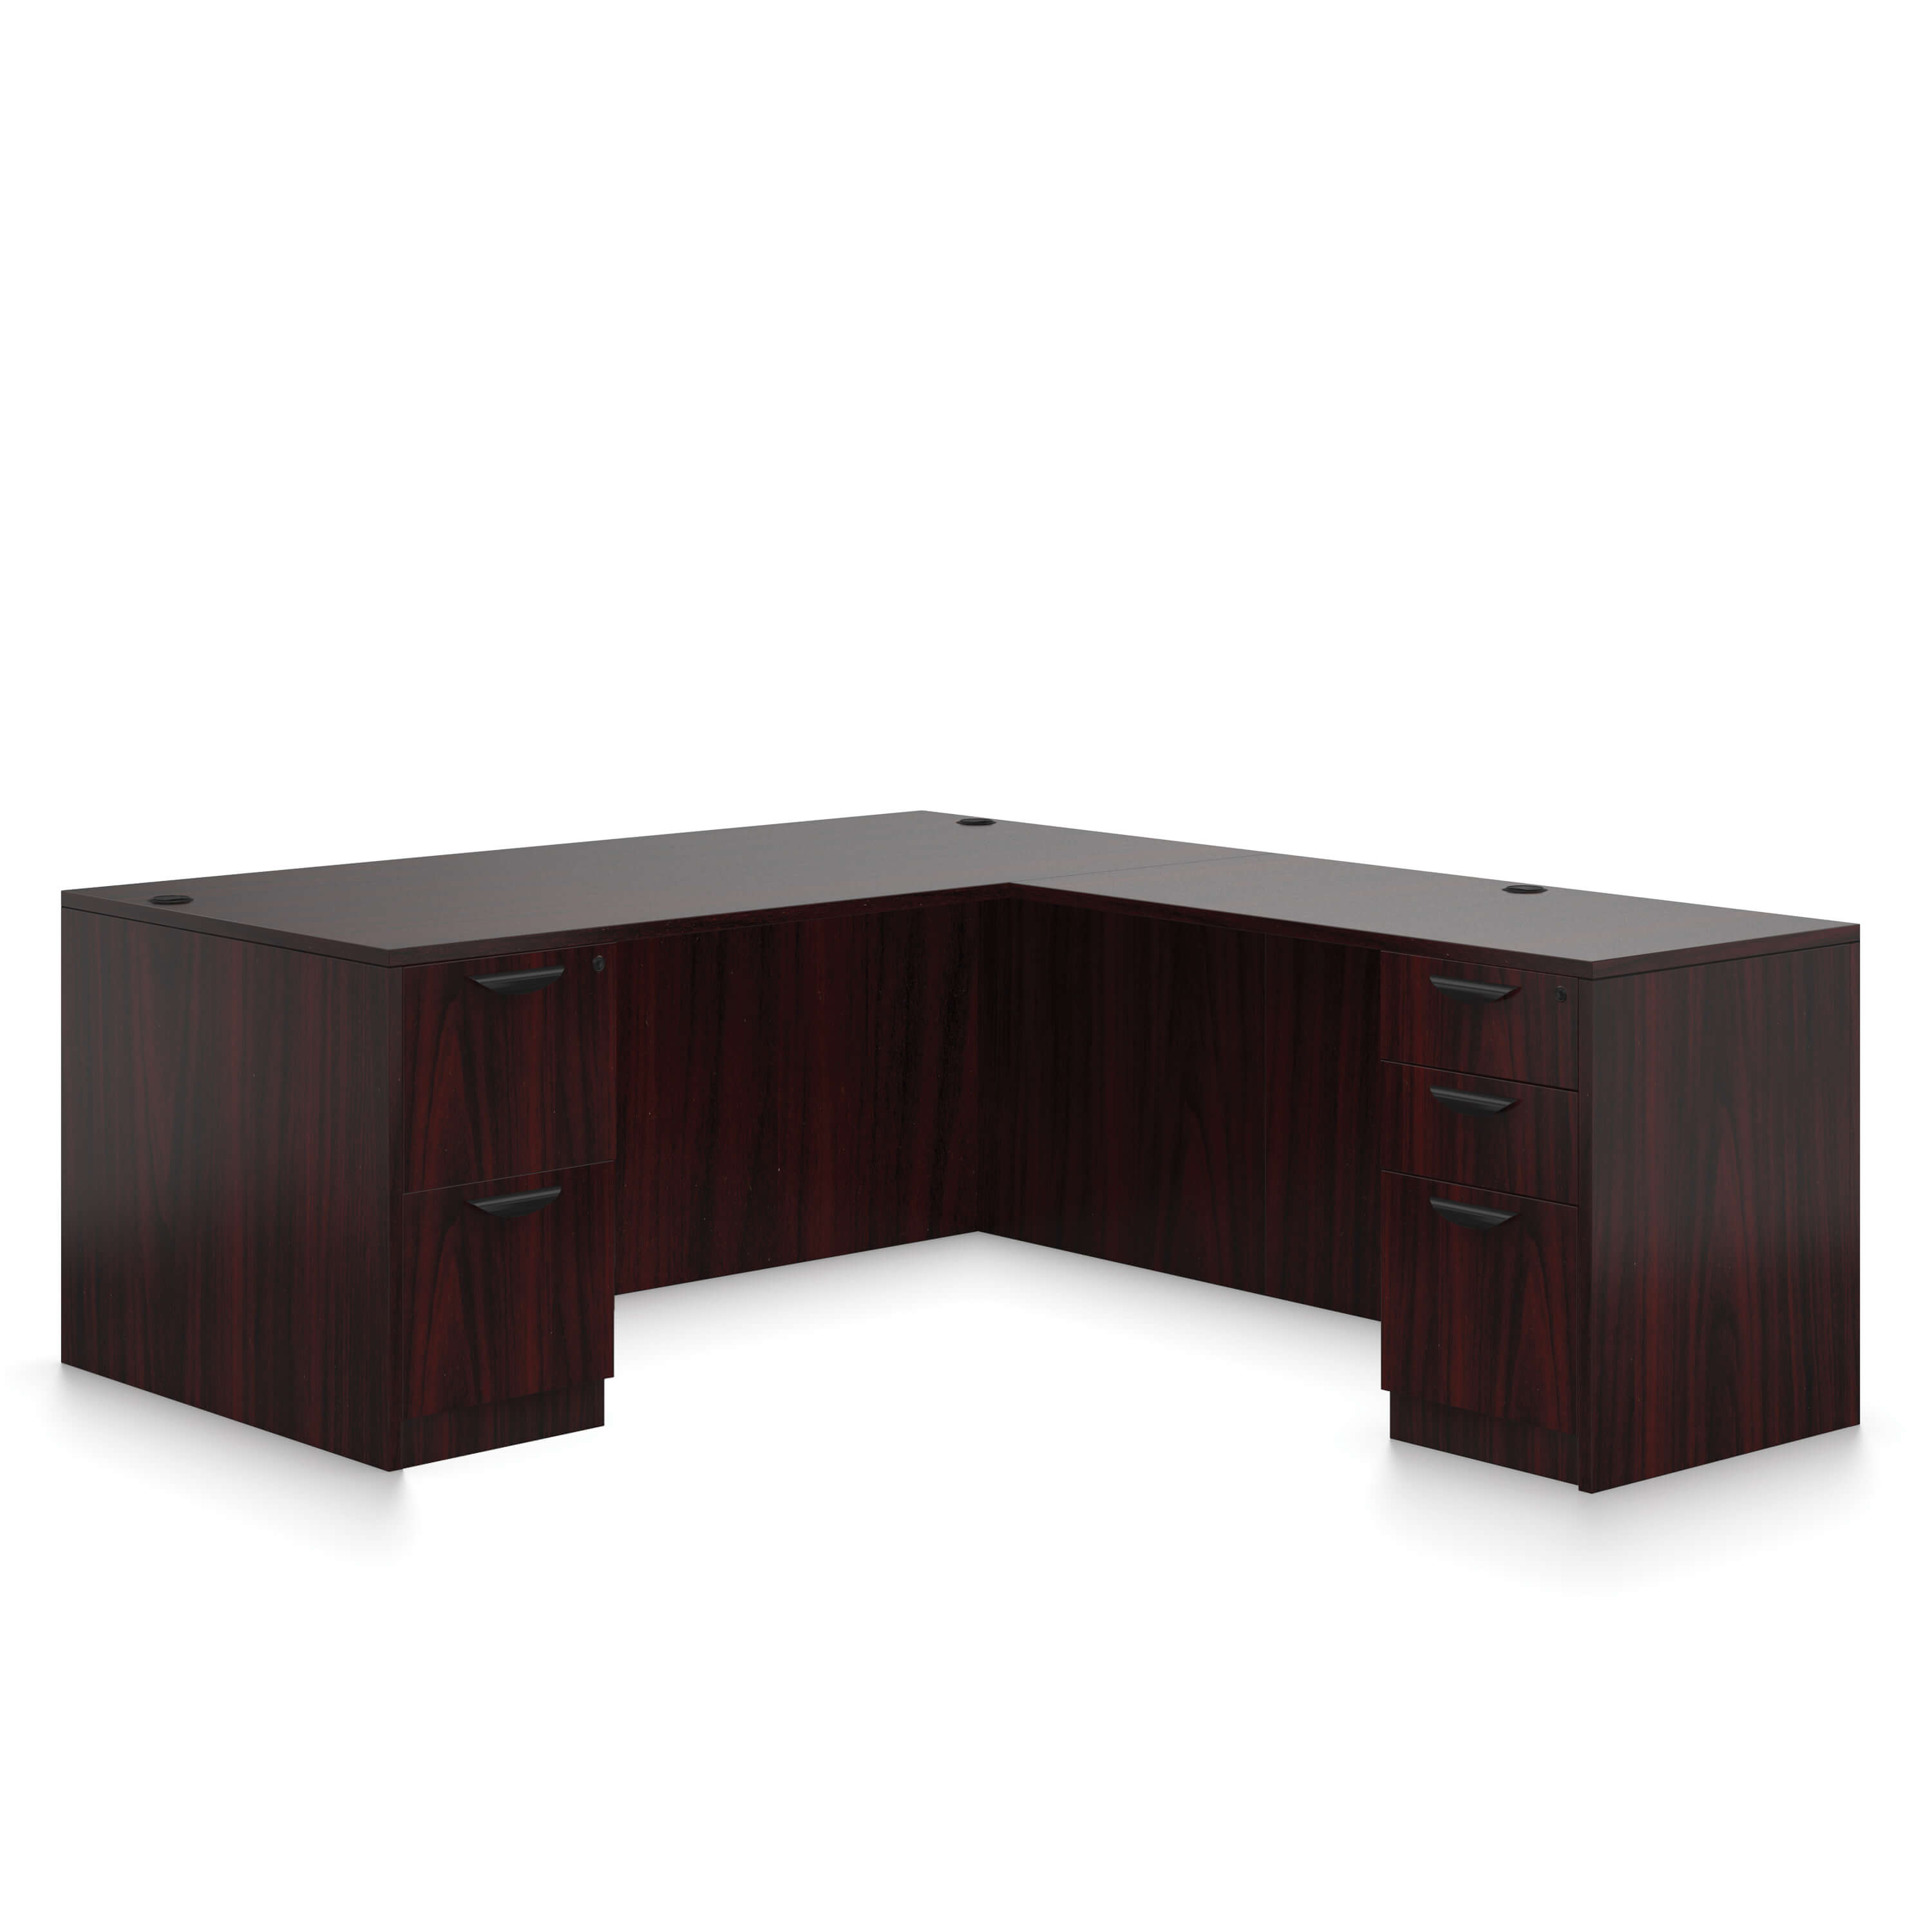 Desk furniture office desk wood